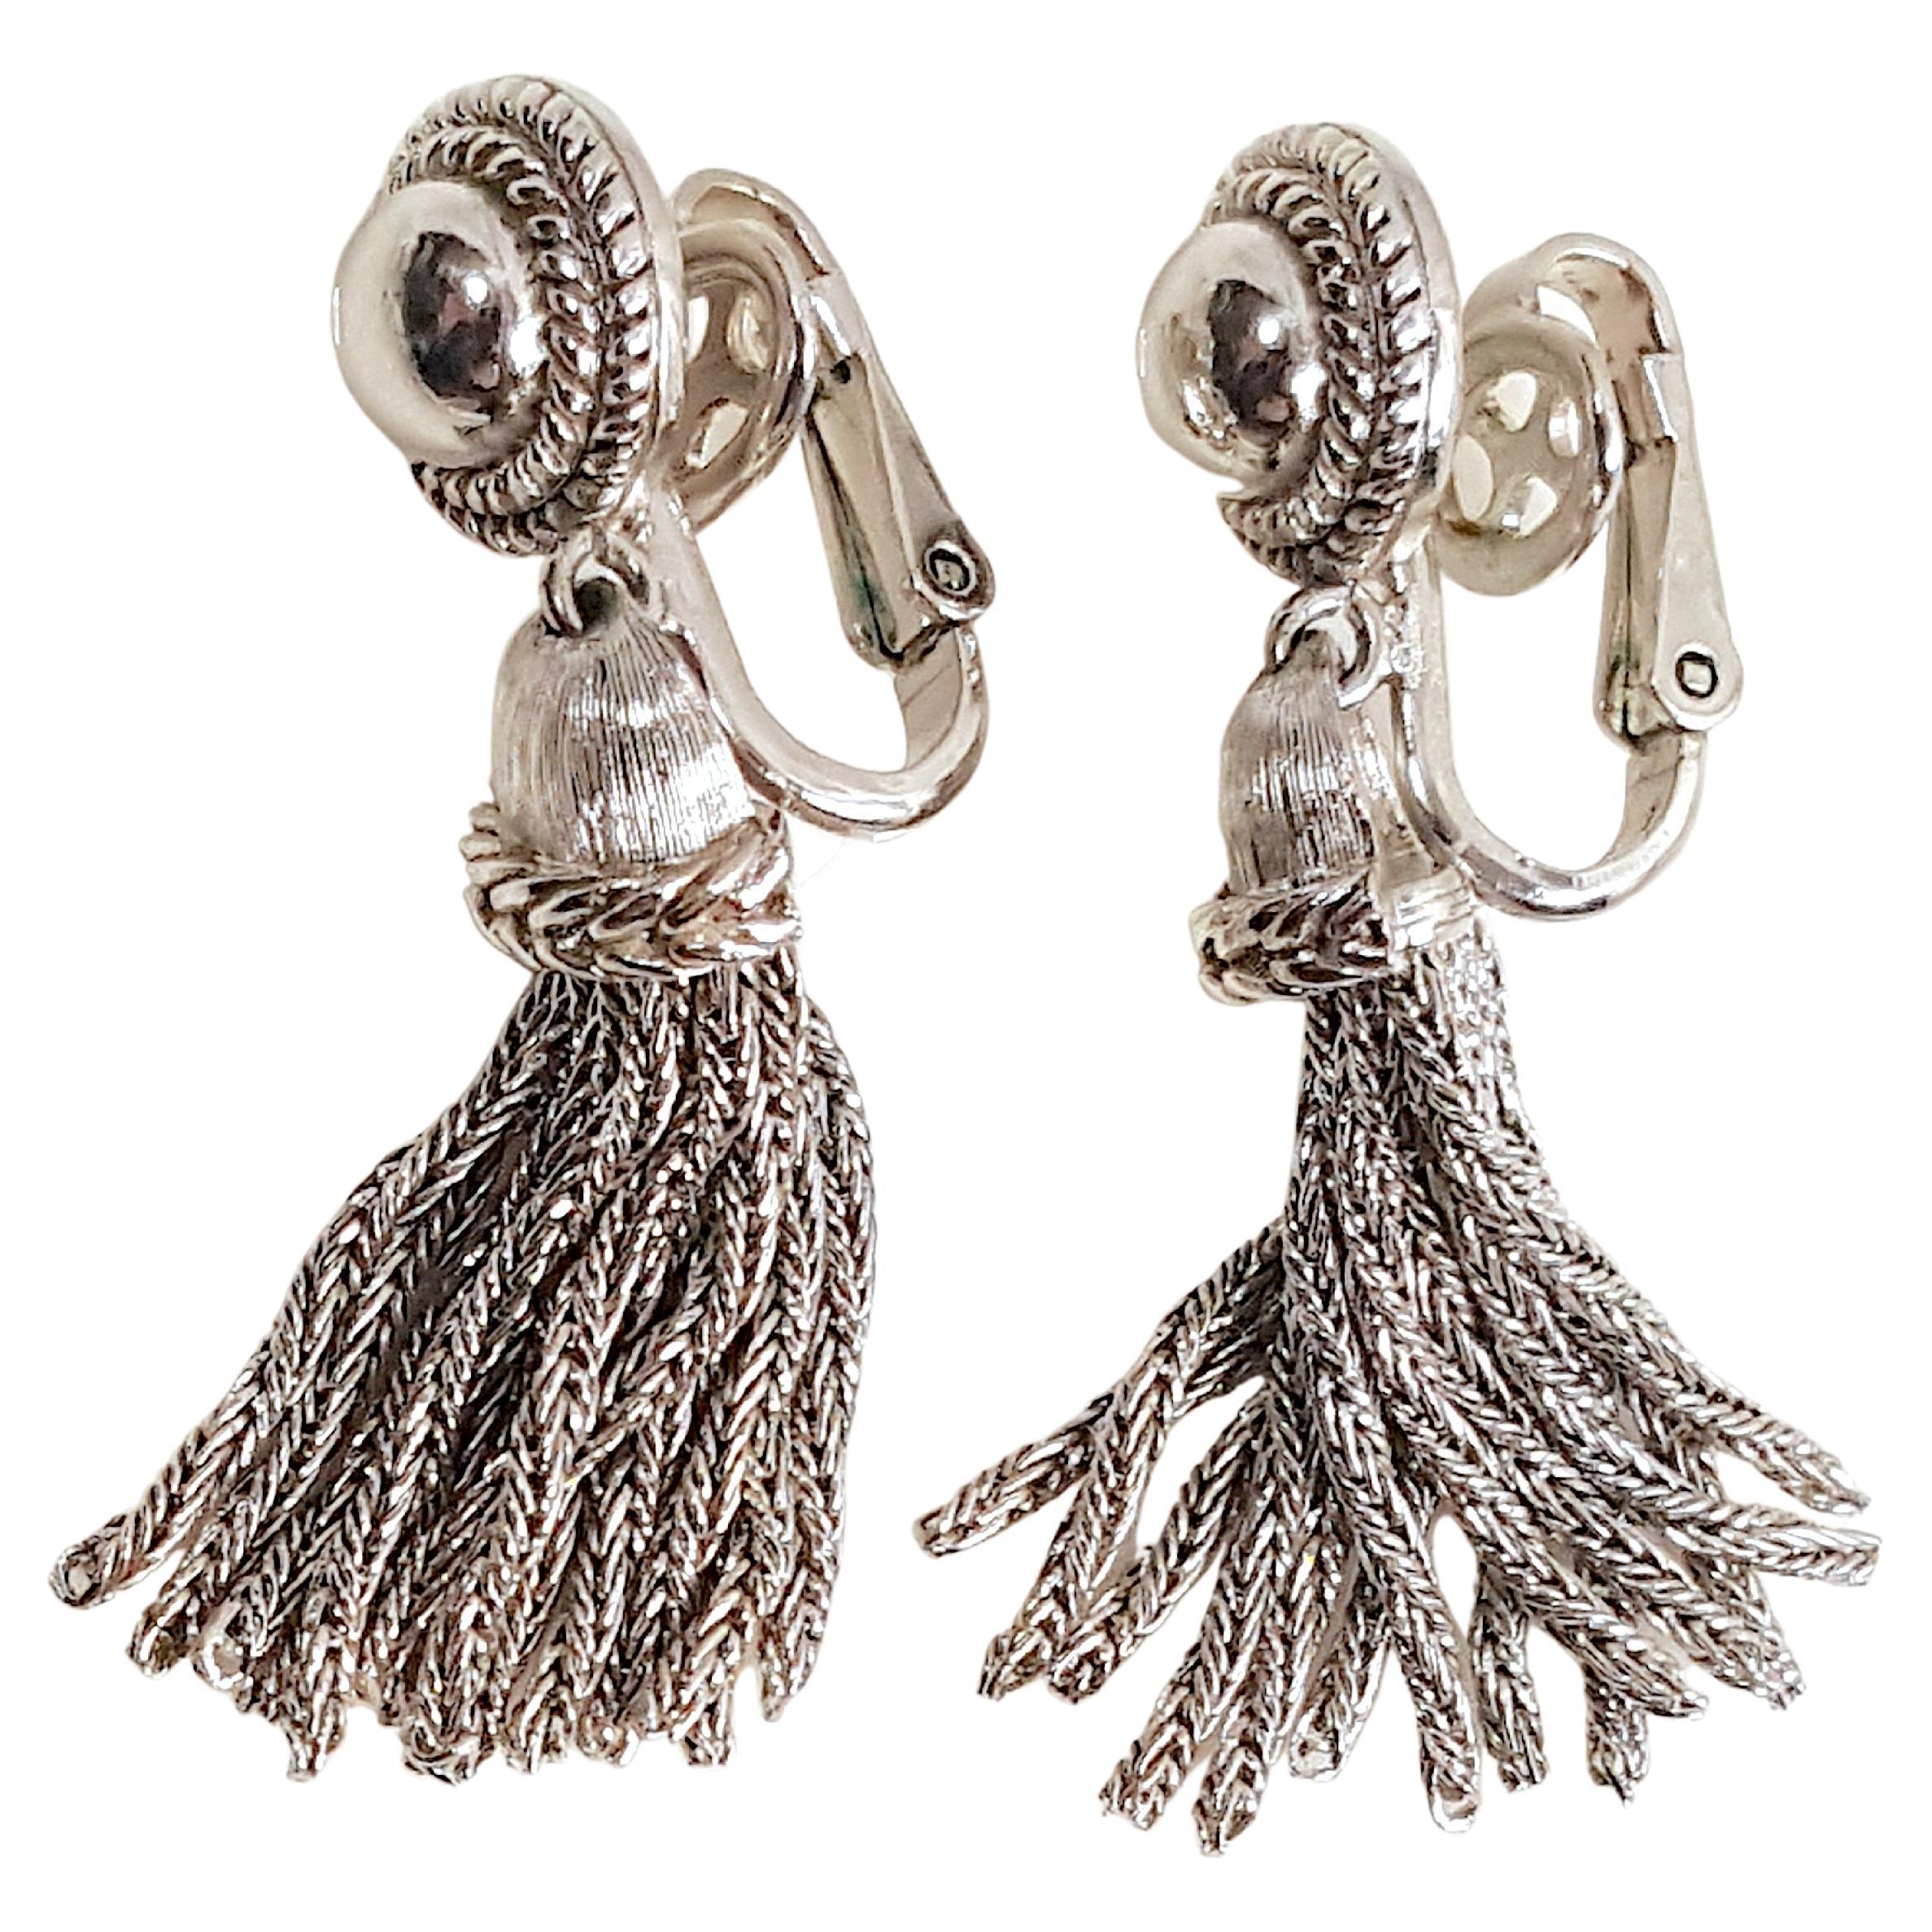 1940s style earrings